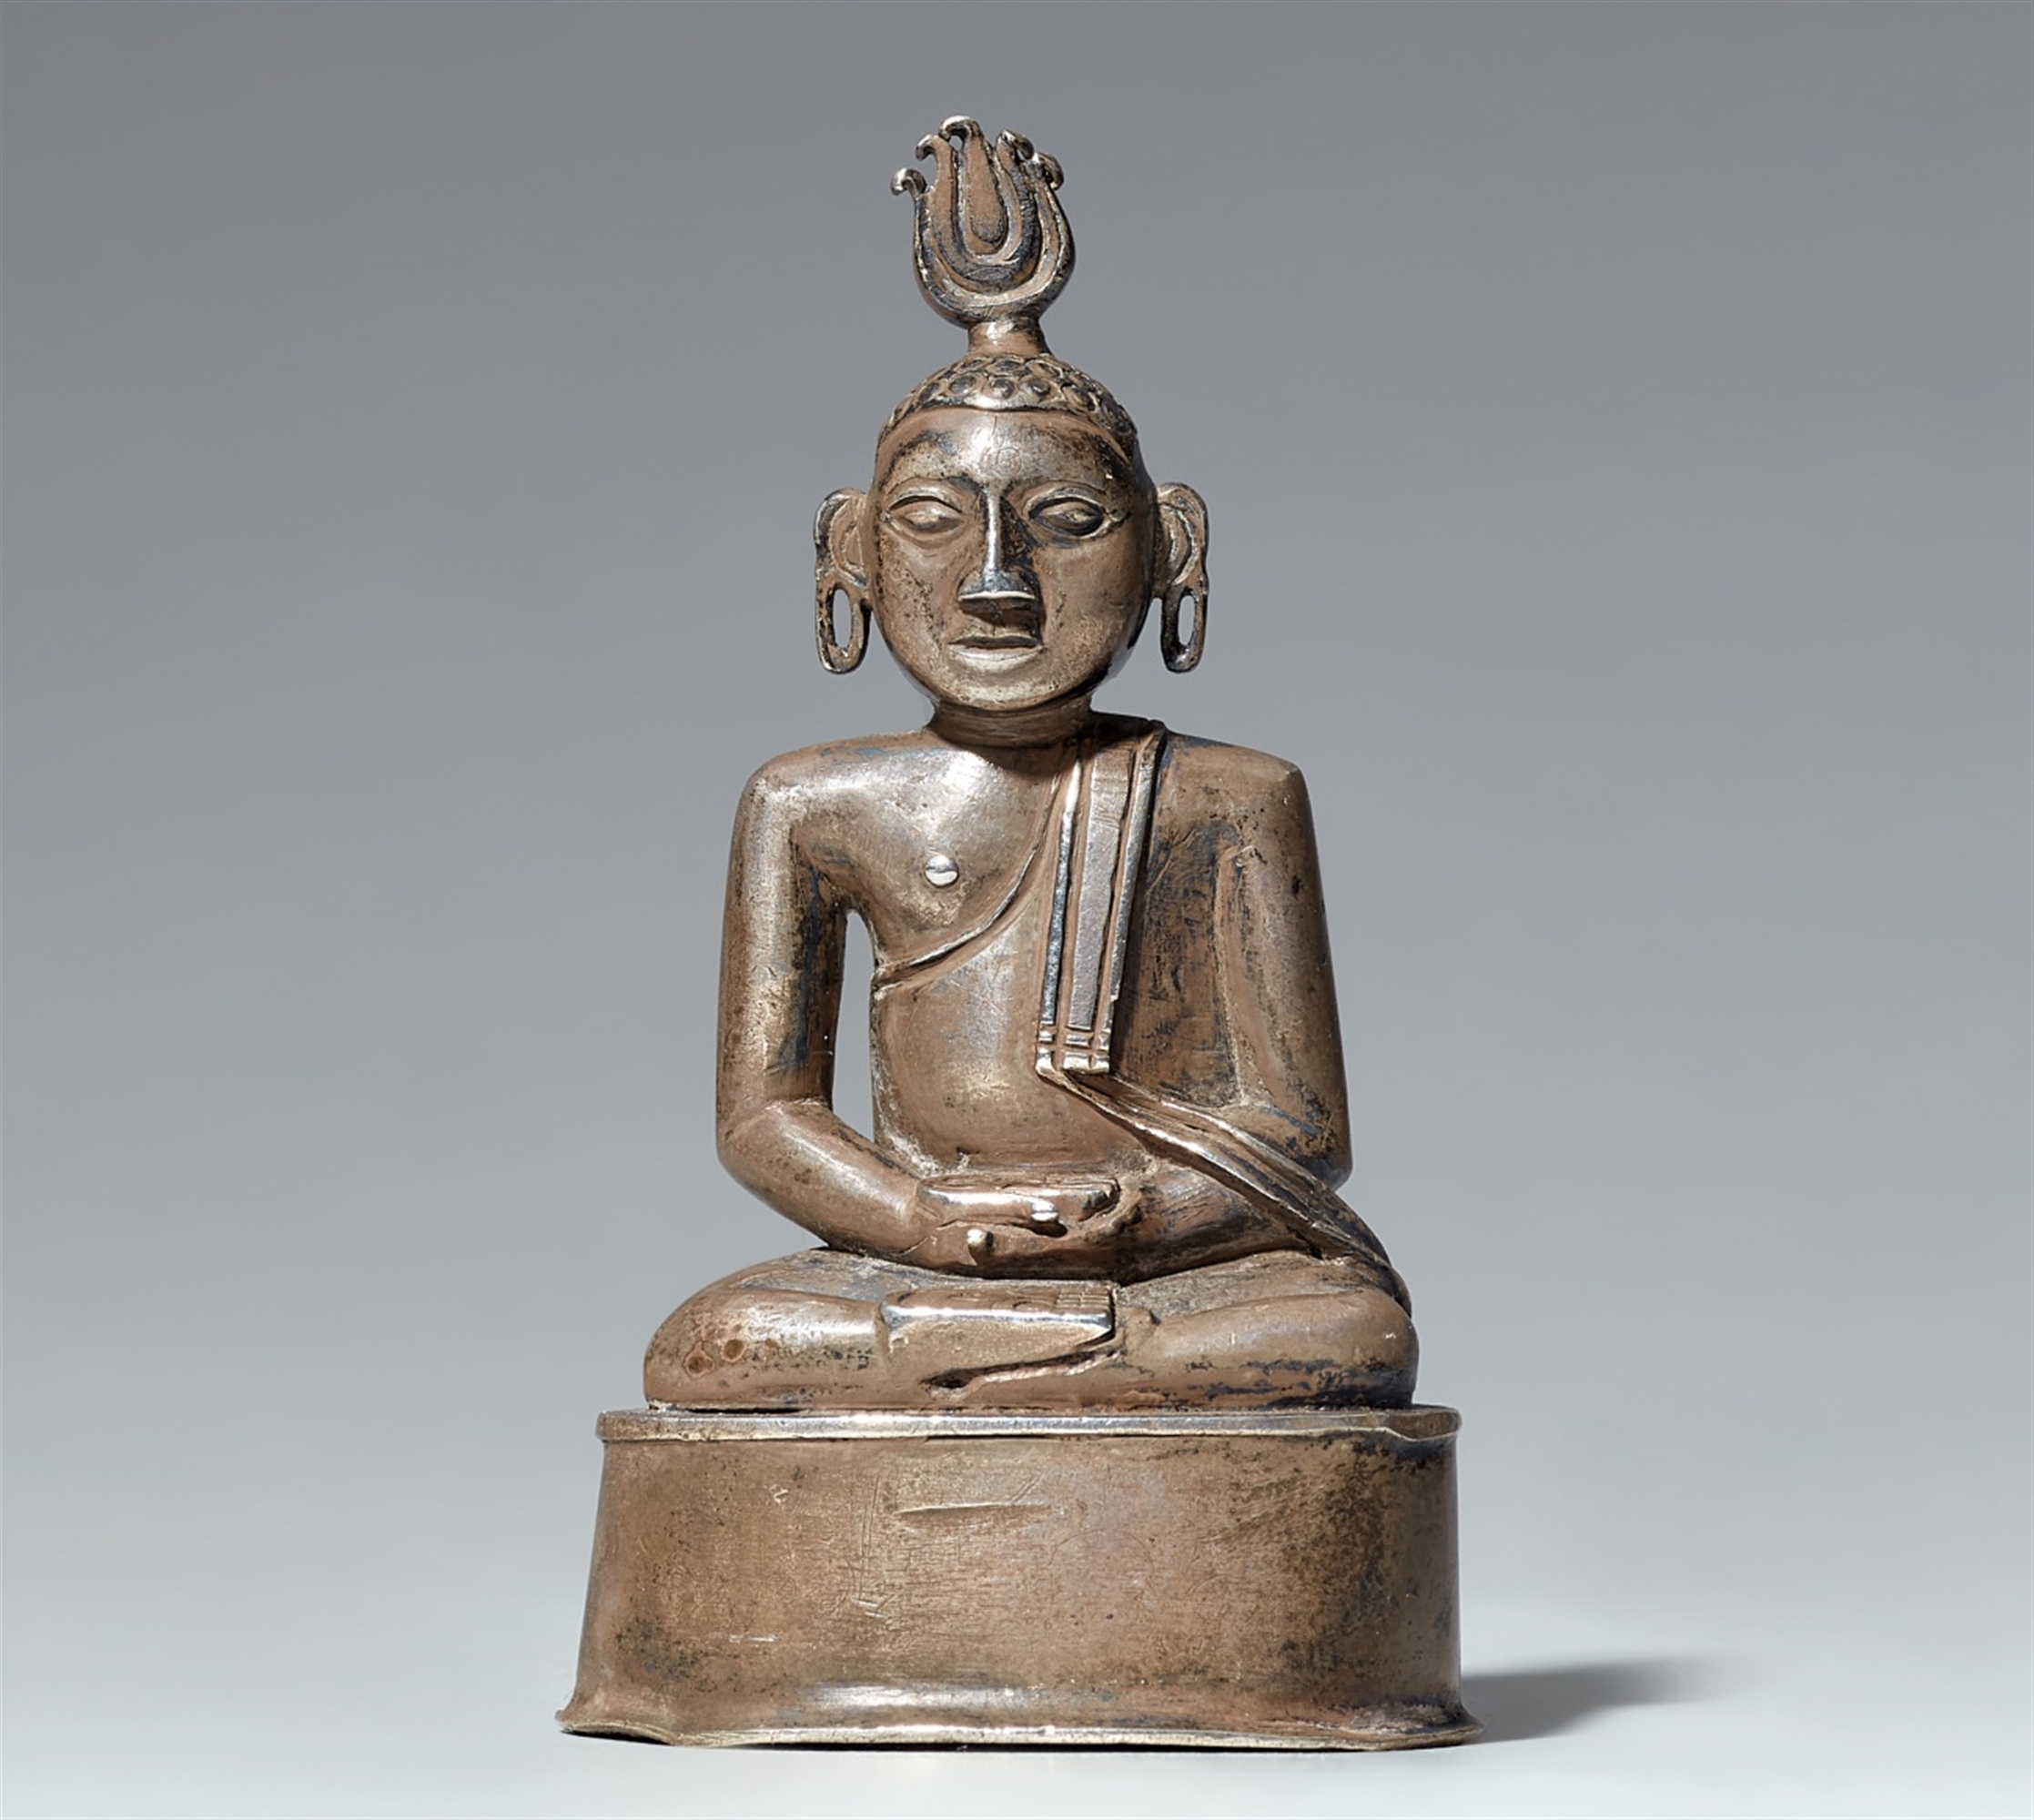 A small Sri Lankan silver figure of Buddha Shakyamuni.19th century